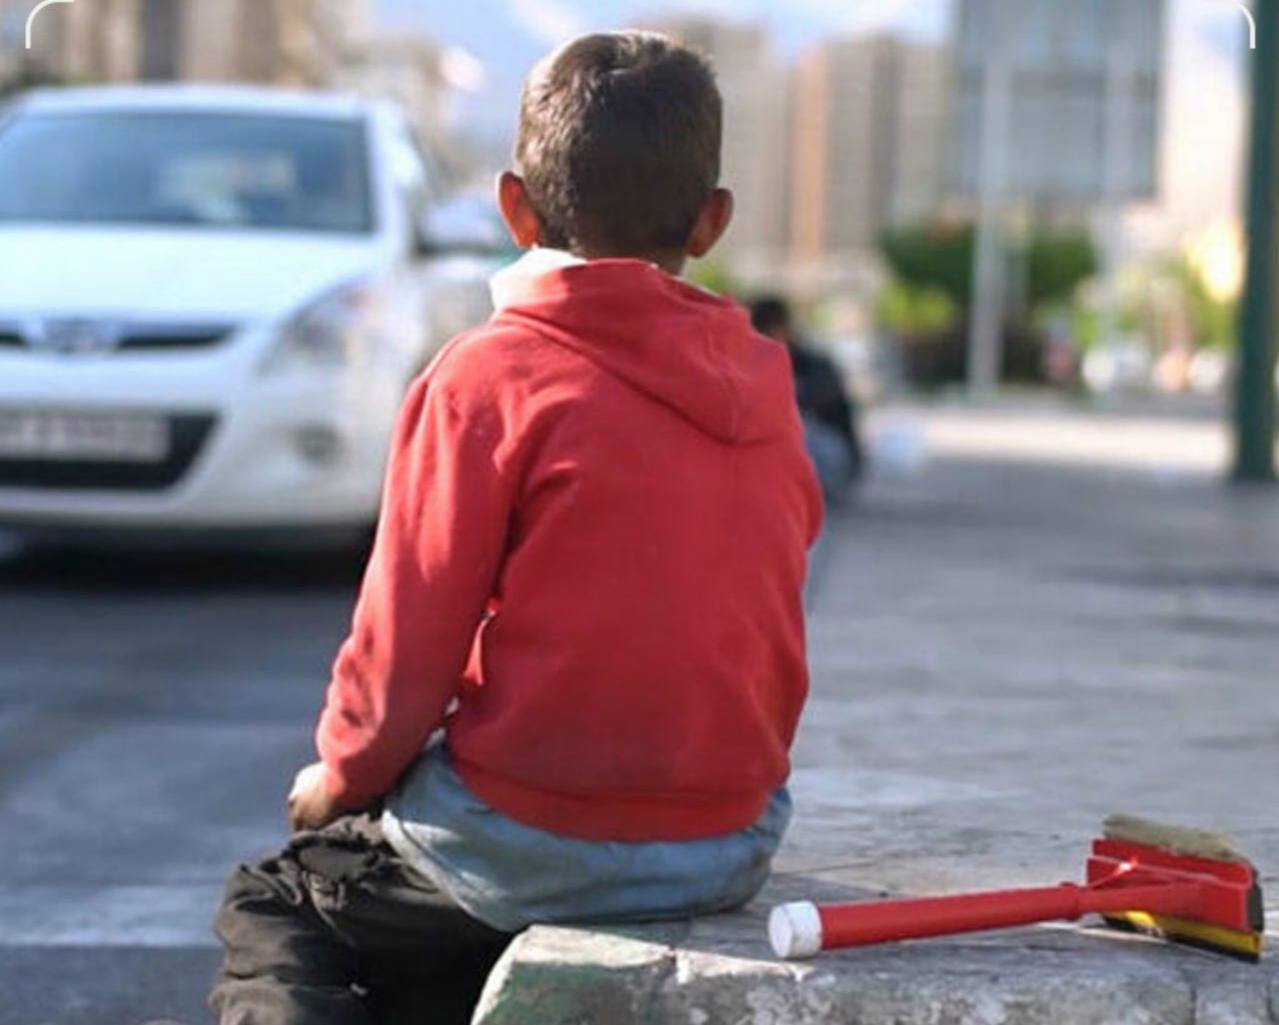 افزایش تعداد کودکان کار و خیابانی در تهران